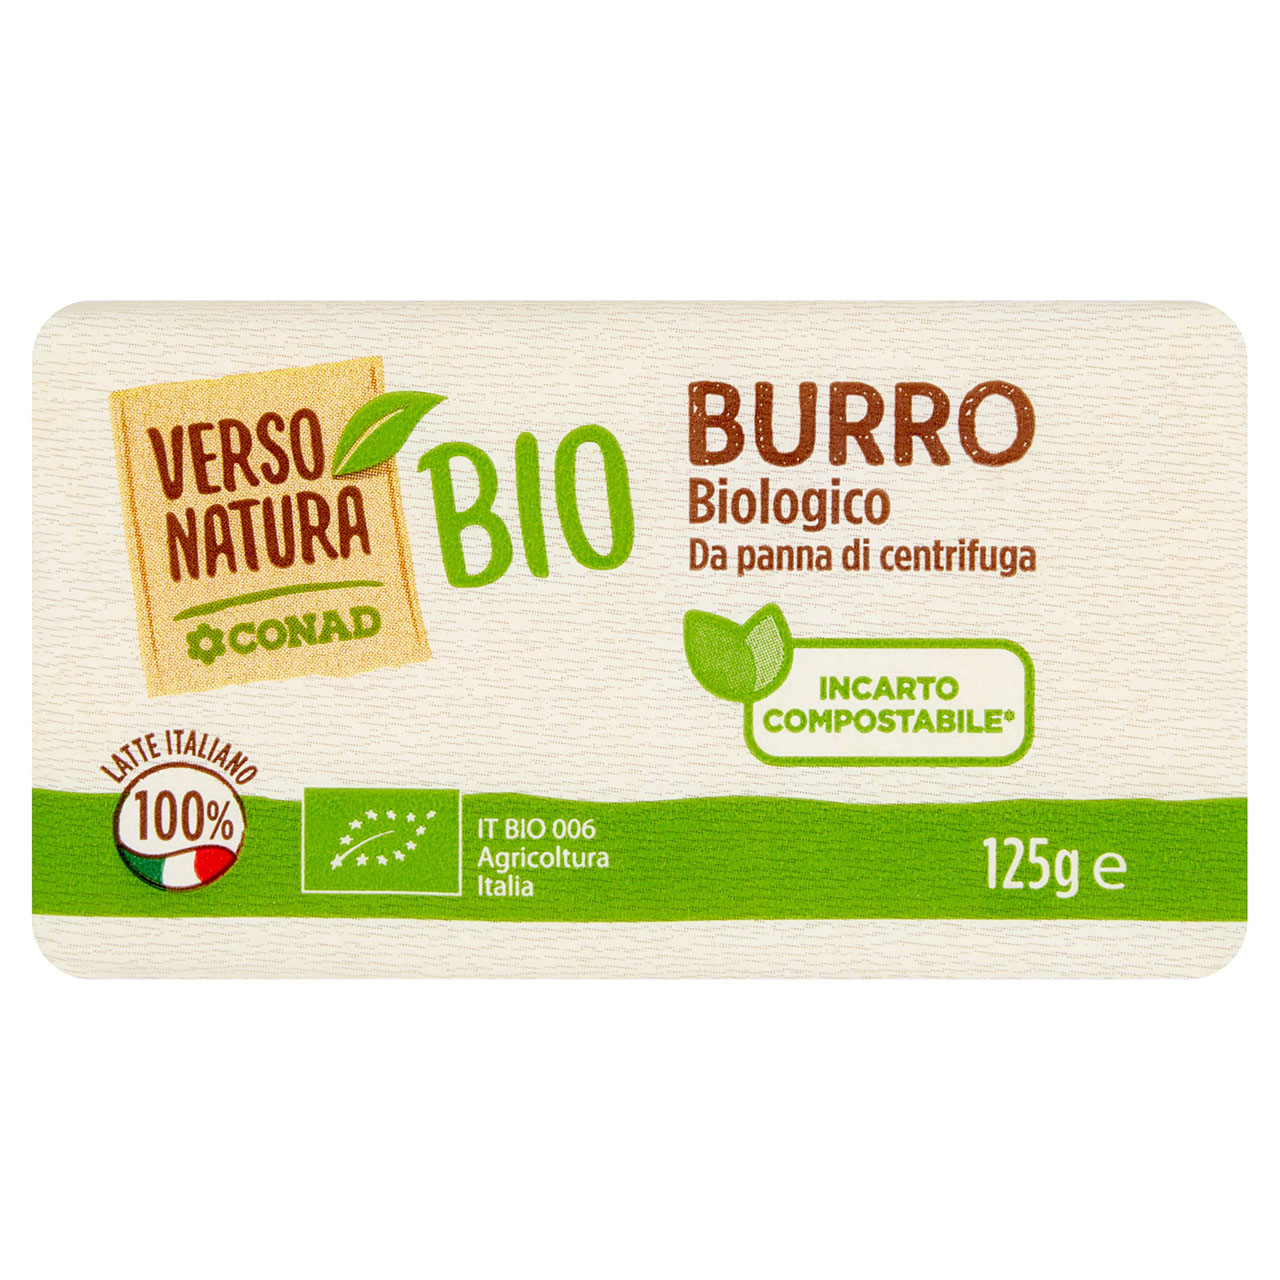 Burro Biologico 125 g Conad Verso Natura Bio